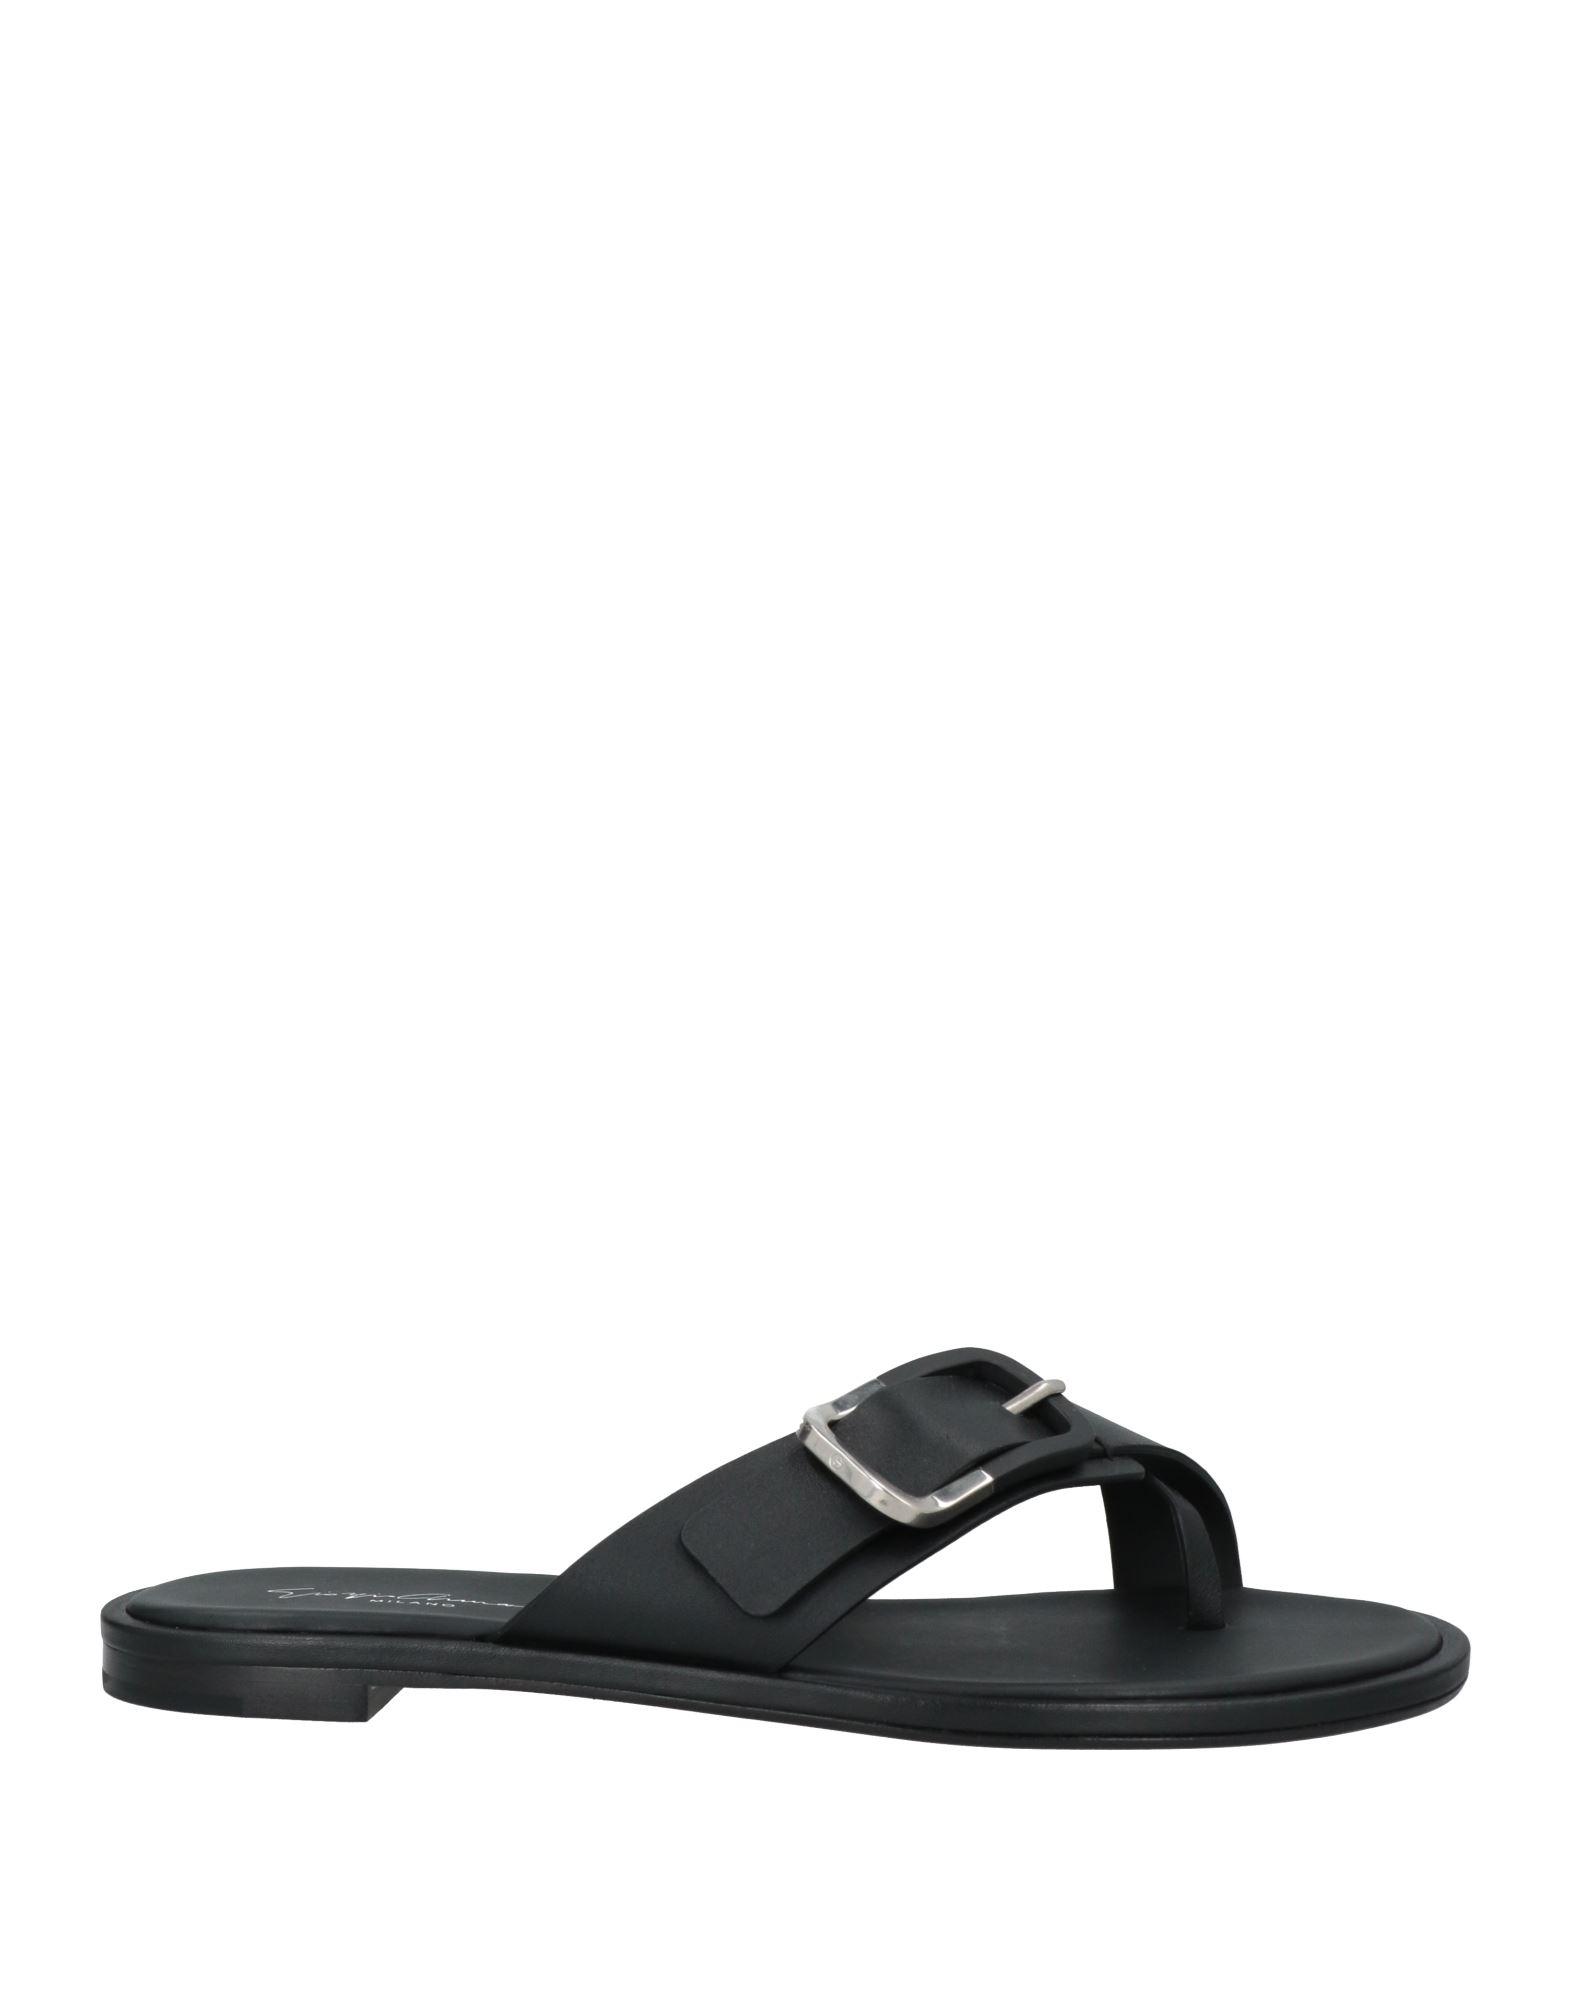 Giorgio Armani Toe Strap Sandals In Black